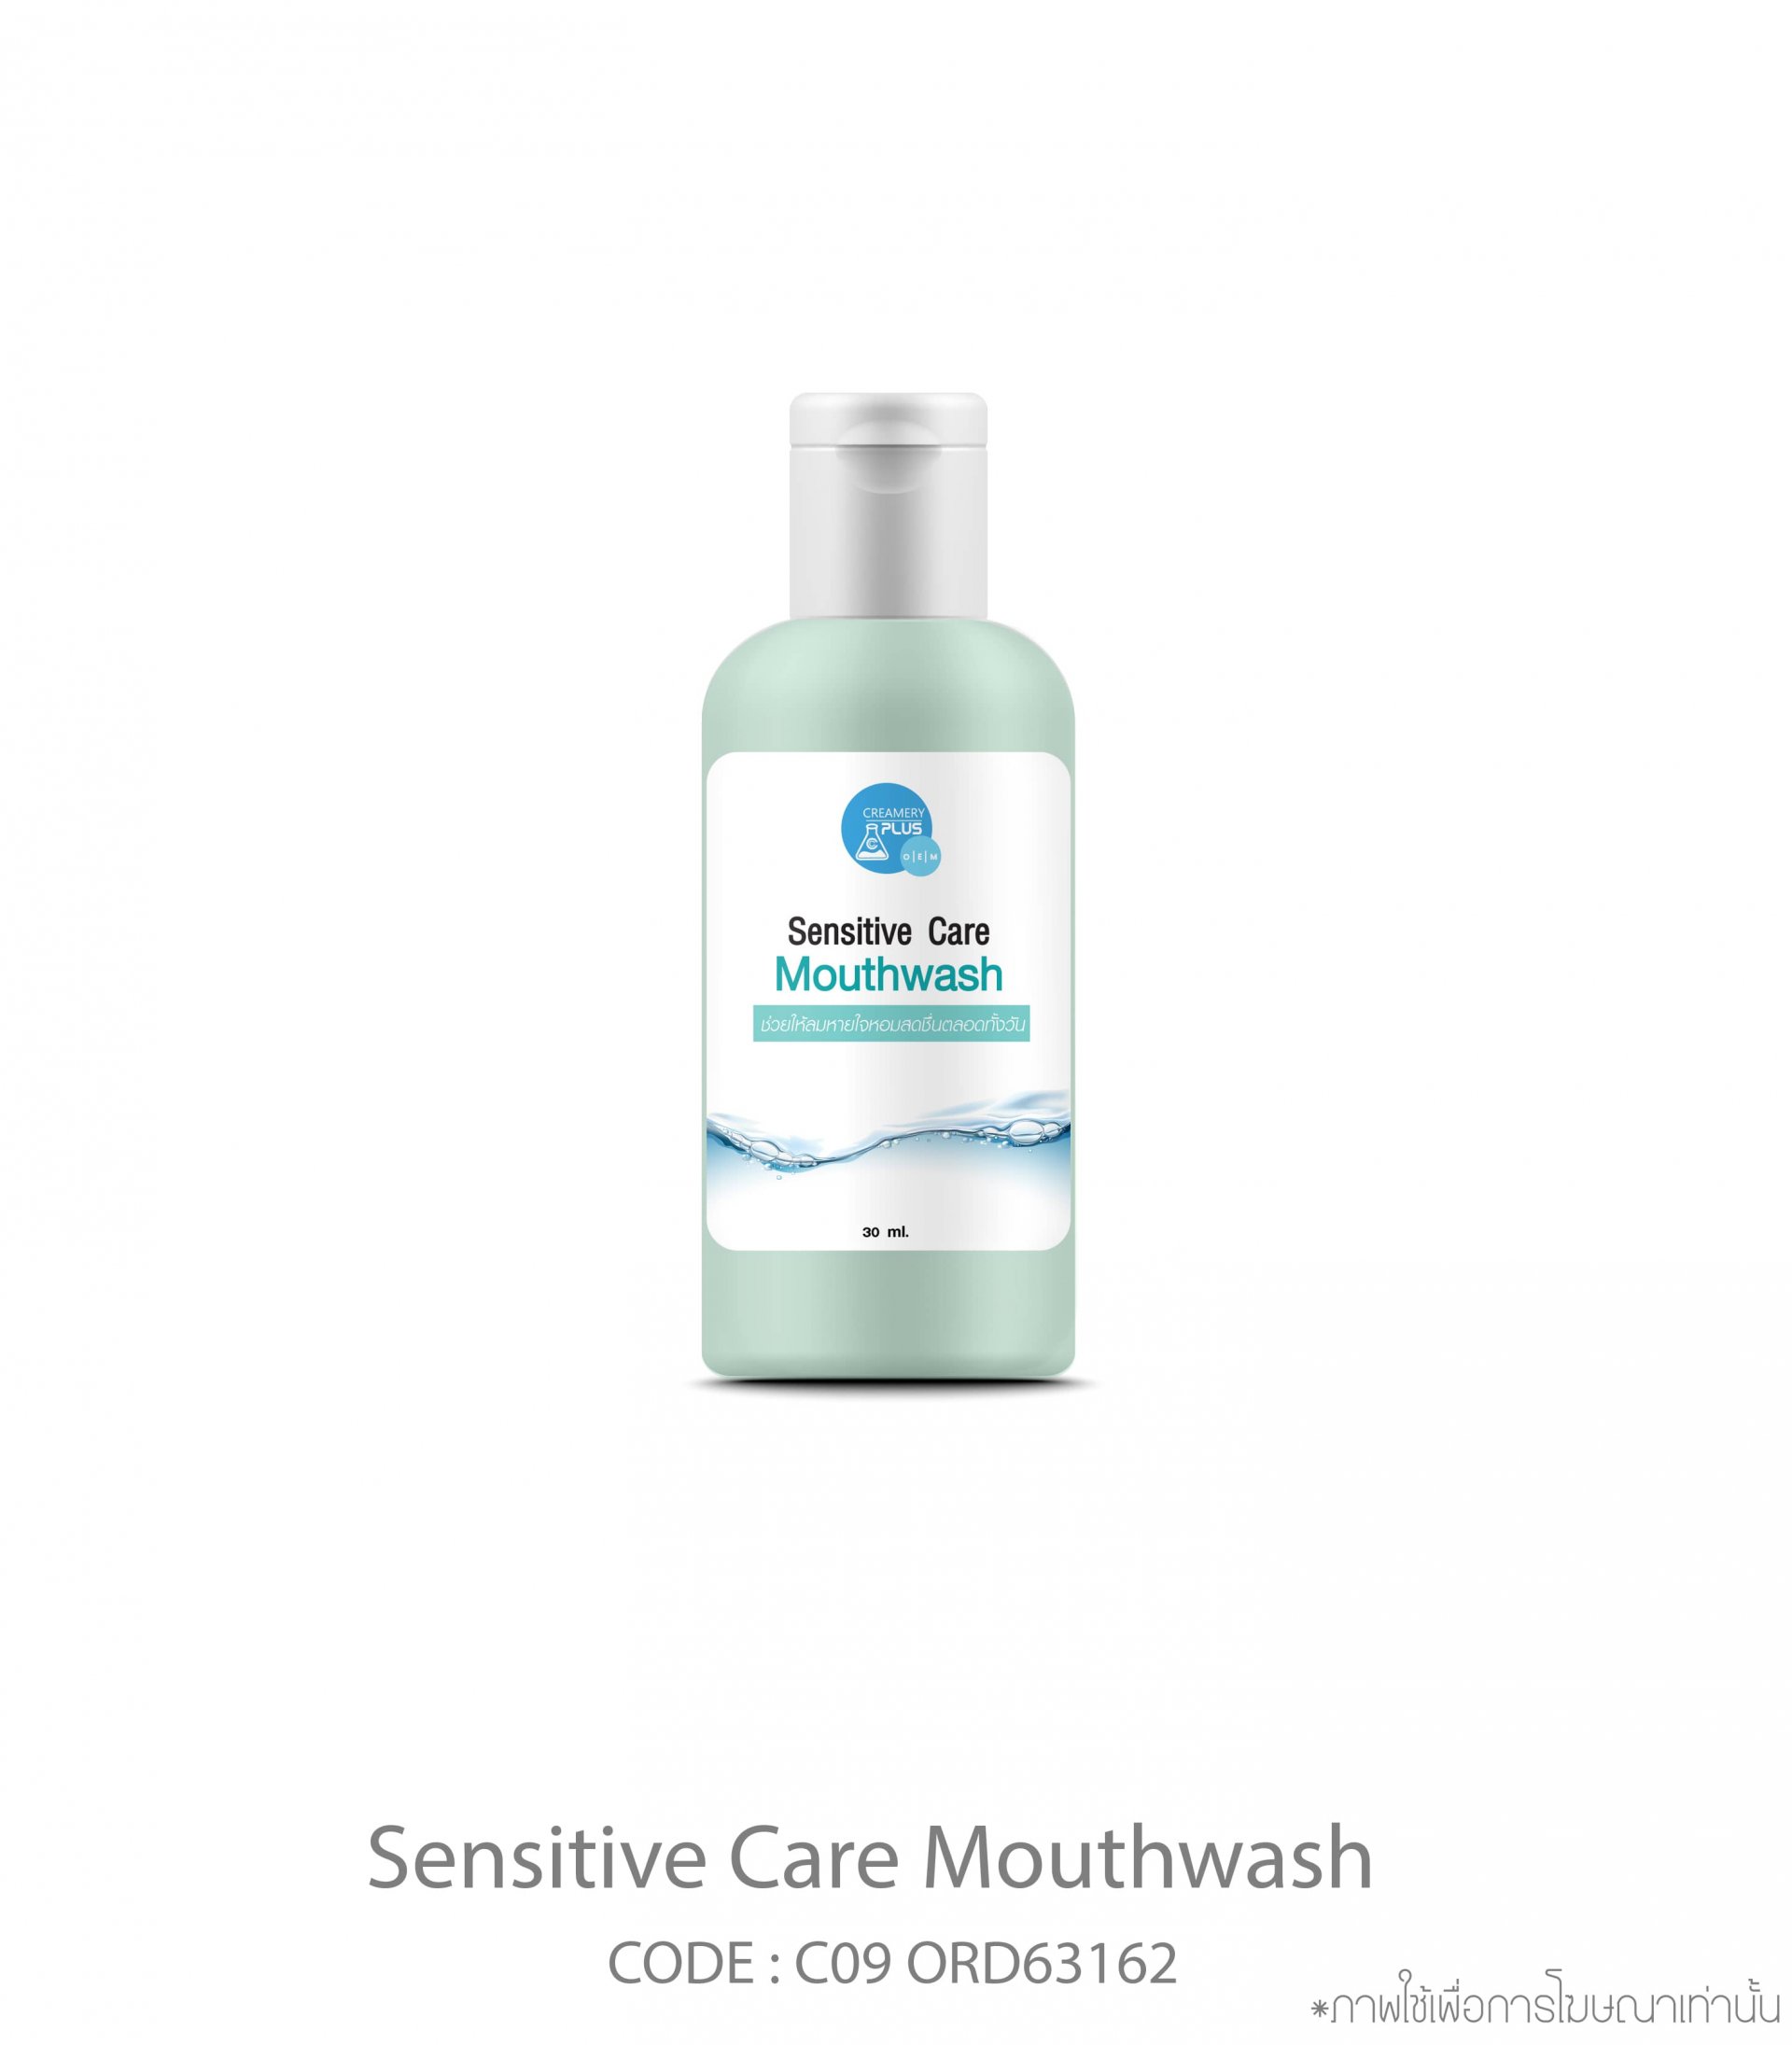 Sensitive Care Mouthwash